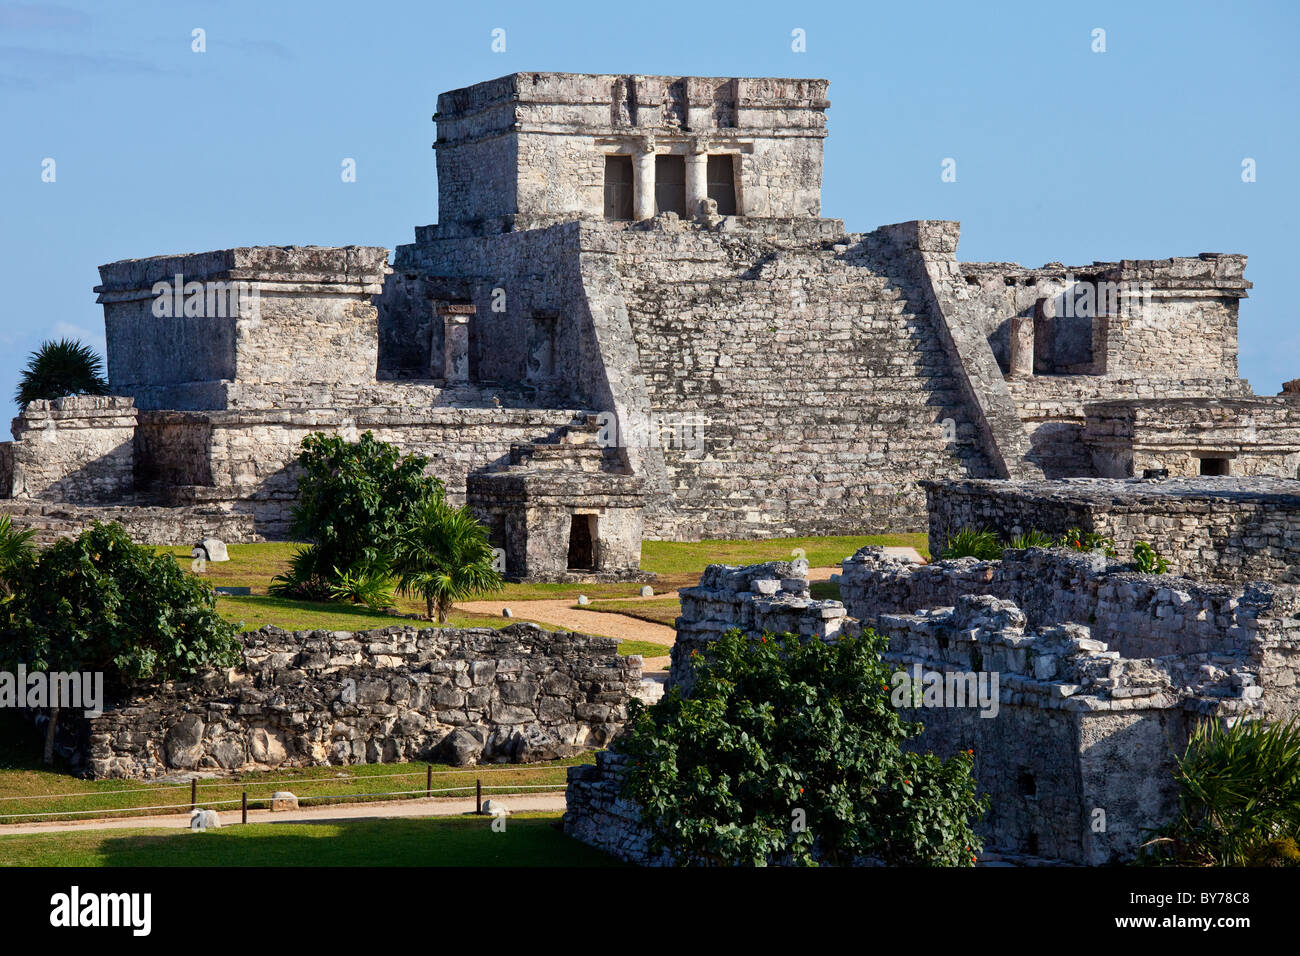 El Castillo, Tulum, ruines Mayas sur la péninsule du Yucatan, Mexique Banque D'Images